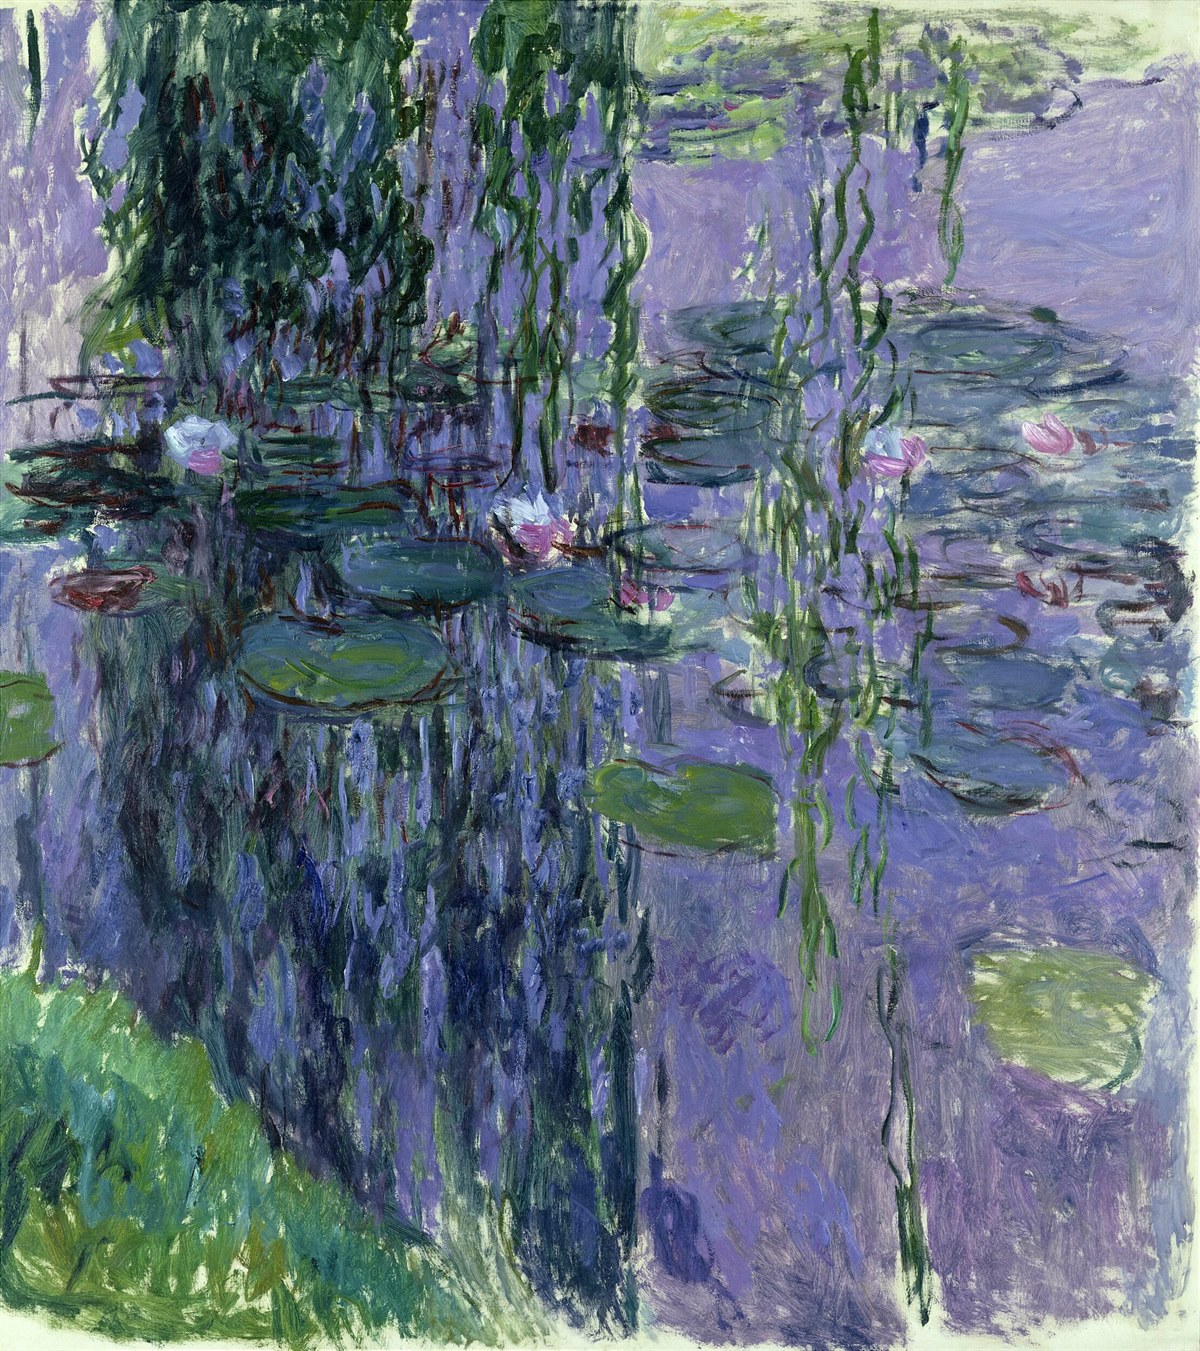 Fondation Louis Vuitton_Exhibition Monet - Mitchell, Dialogue and Retrospective_Claude Monet, Nymphéas, 1916 – 1919